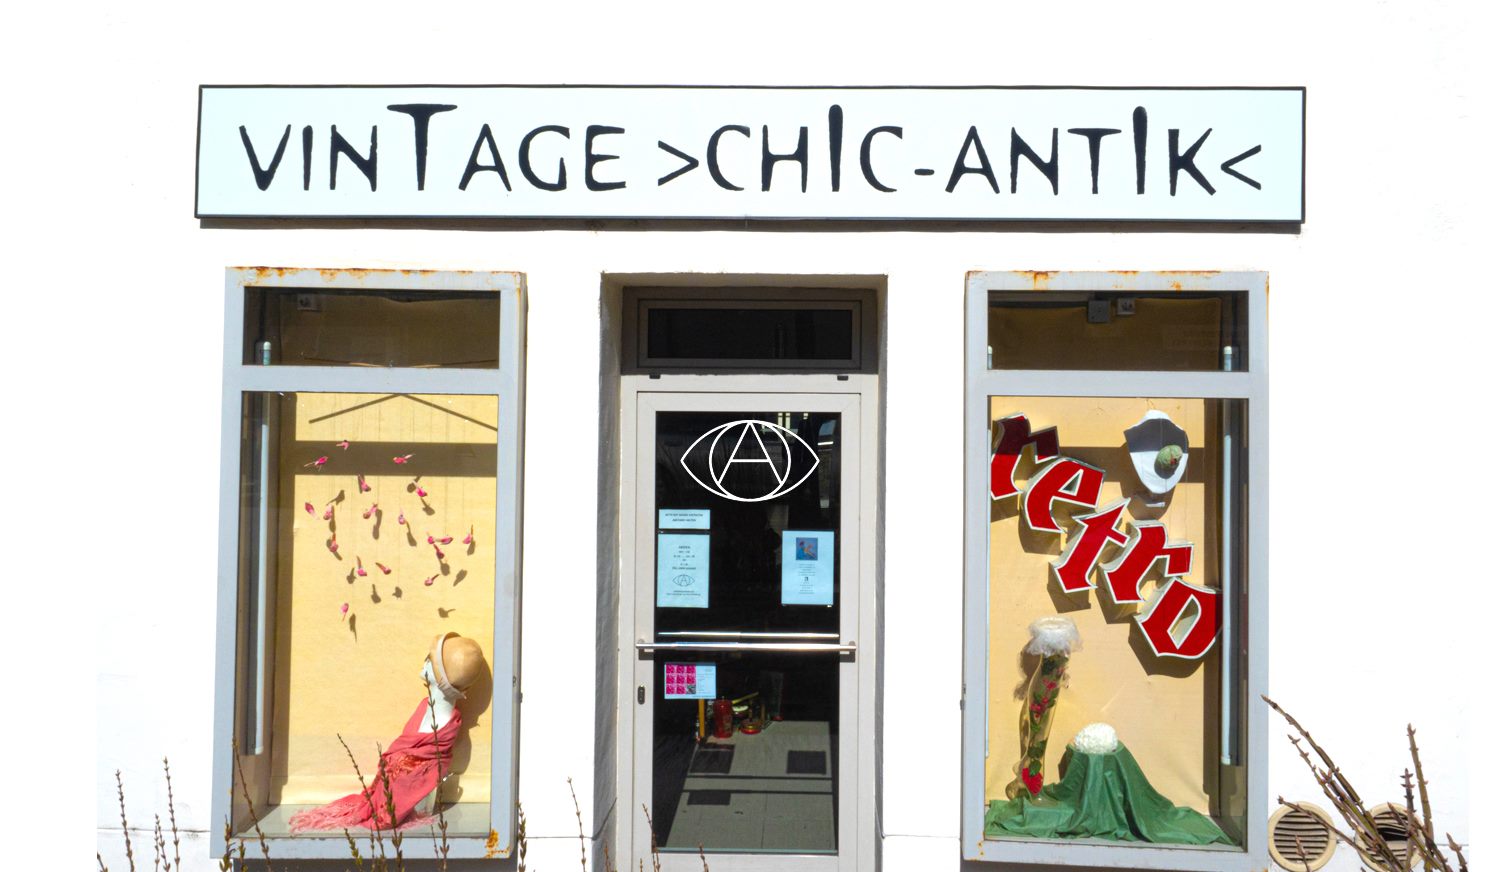 Eingang und Auslage des Vintage Chic Antik Vintage Shops in Klagenfurt am Wörthersee